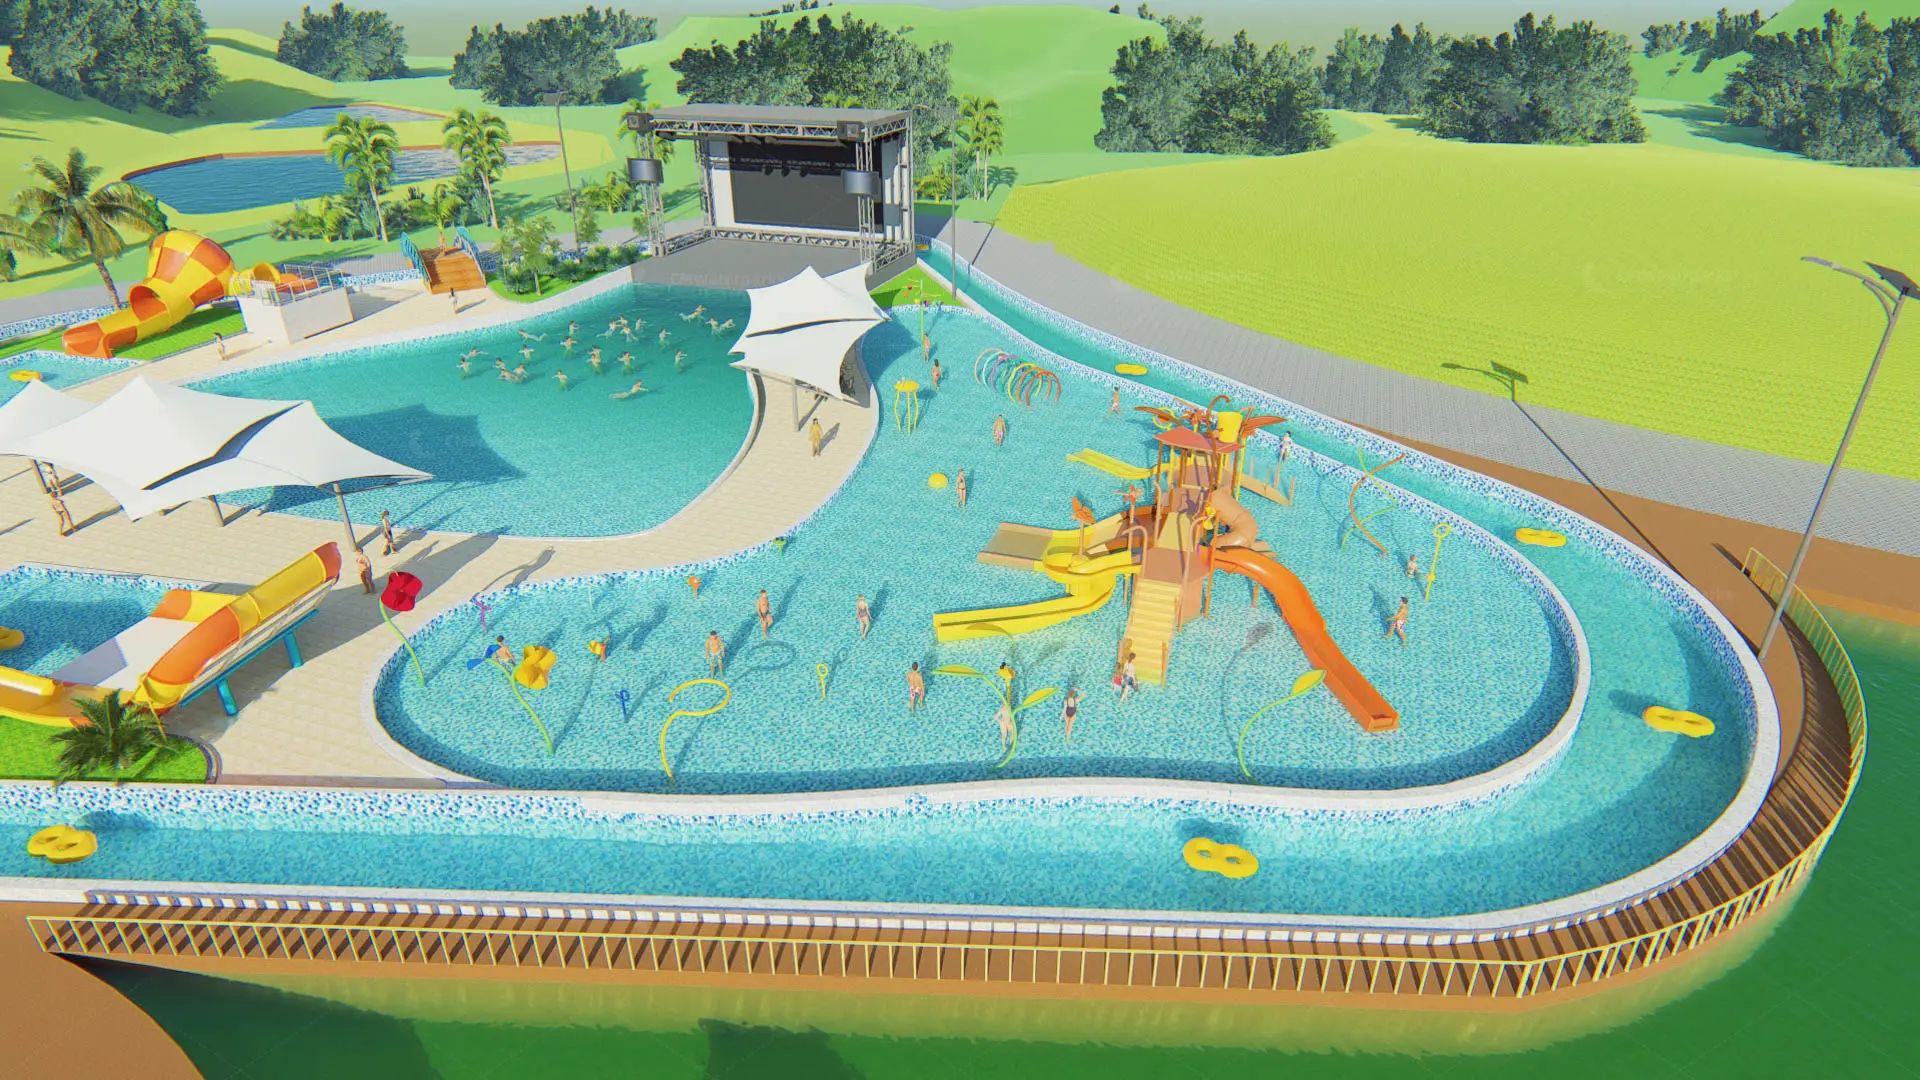 Dessin 3D commercial équipement de parc aquatique aire de jeux aquatique extérieure drôle maison d'eau avec toboggan de piscine en fibre de verre extérieur